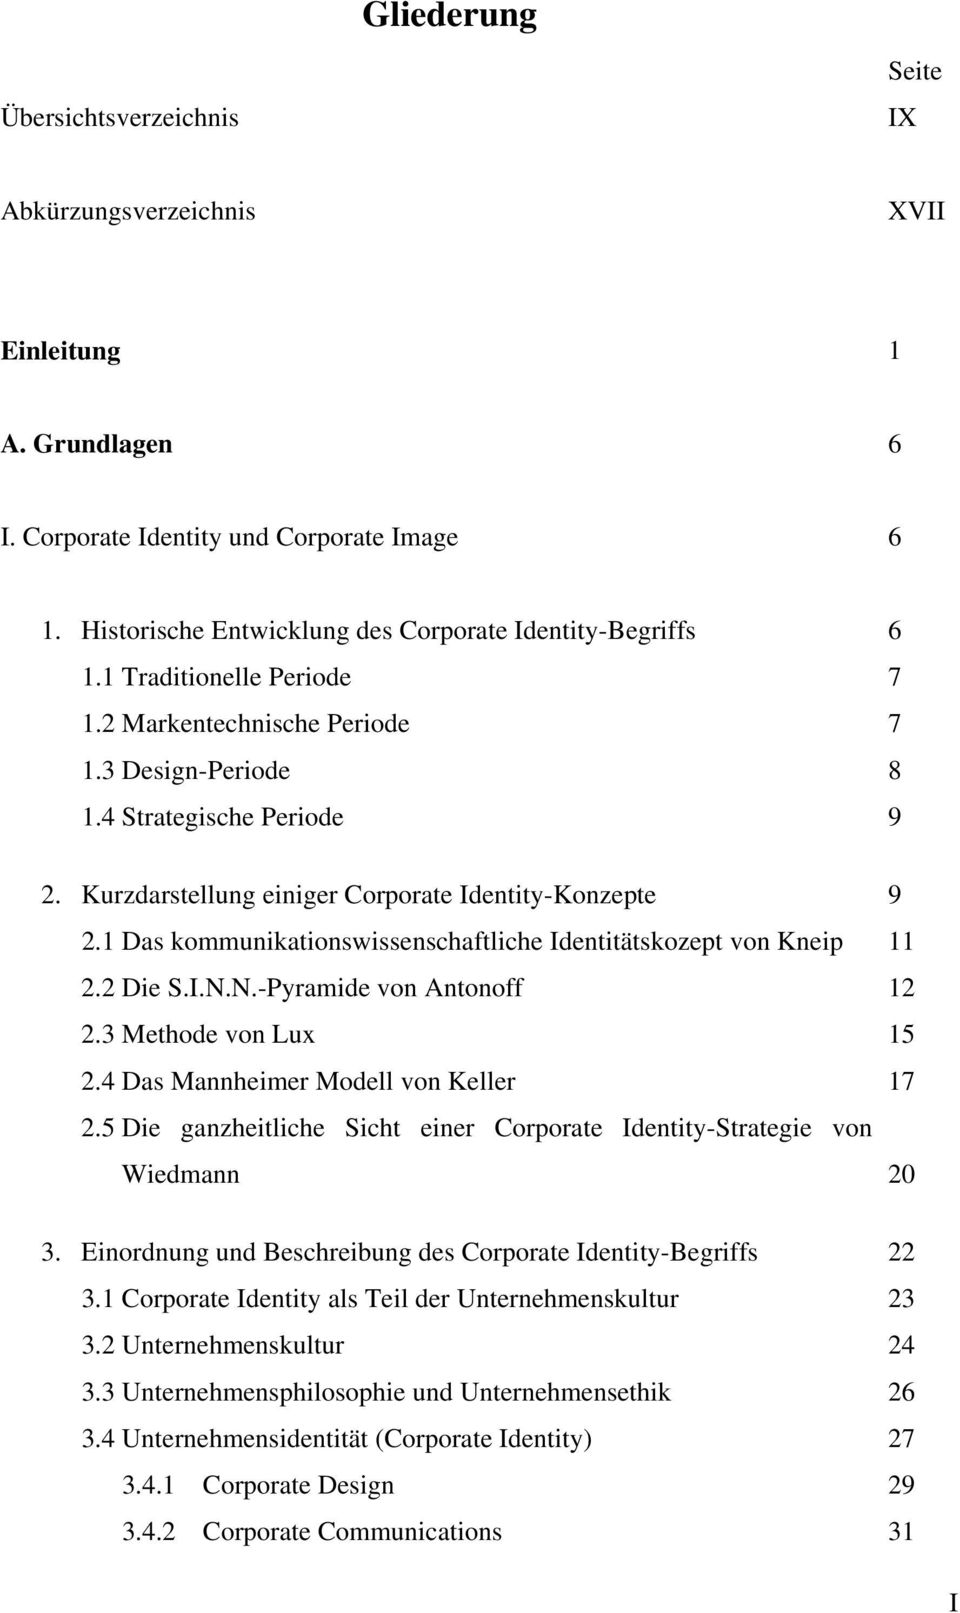 Kurzdarstellung einiger Corporate Identity-Konzepte 2.1 Das kommunikationswissenschaftliche Identitätskozept von Kneip 2.2 Die S.I.N.N.-Pyramide von Antonoff 2.3 Methode von Lux 2.